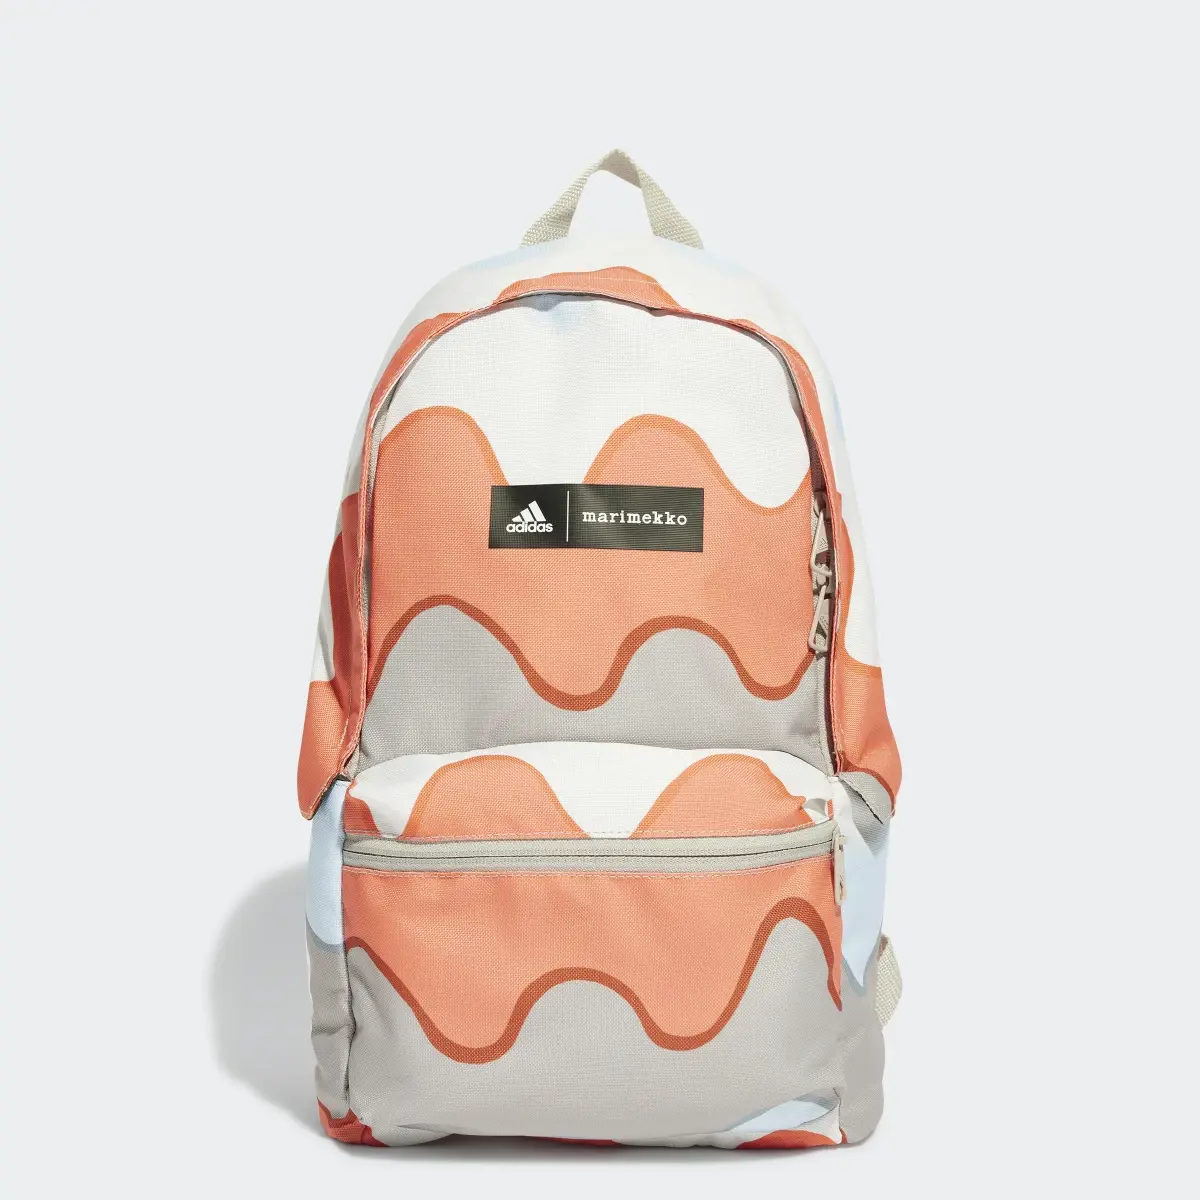 Adidas x Marimekko Backpack. 1